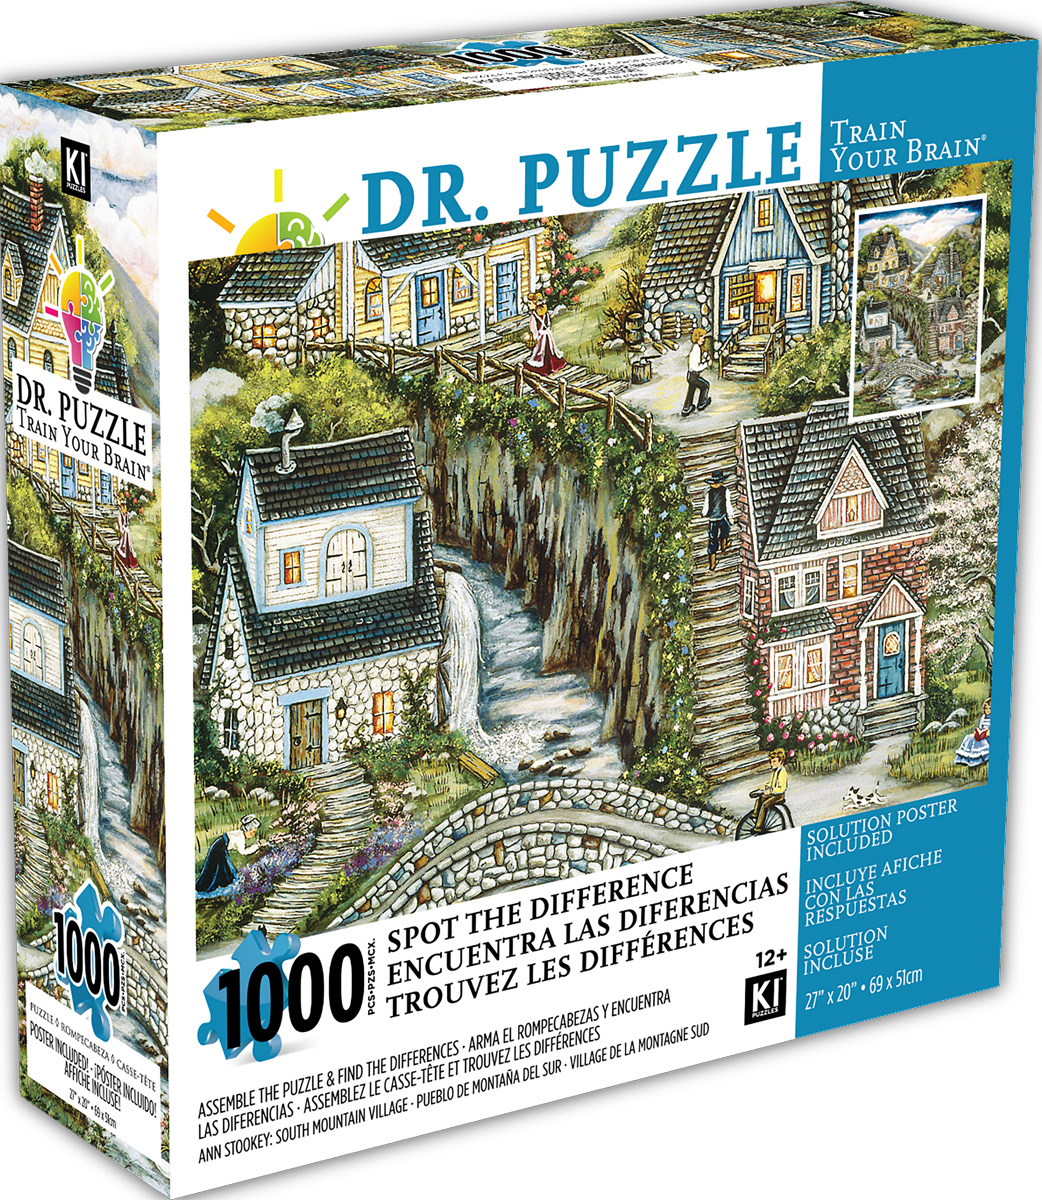 Dr. Puzzle "South Mountain Village"